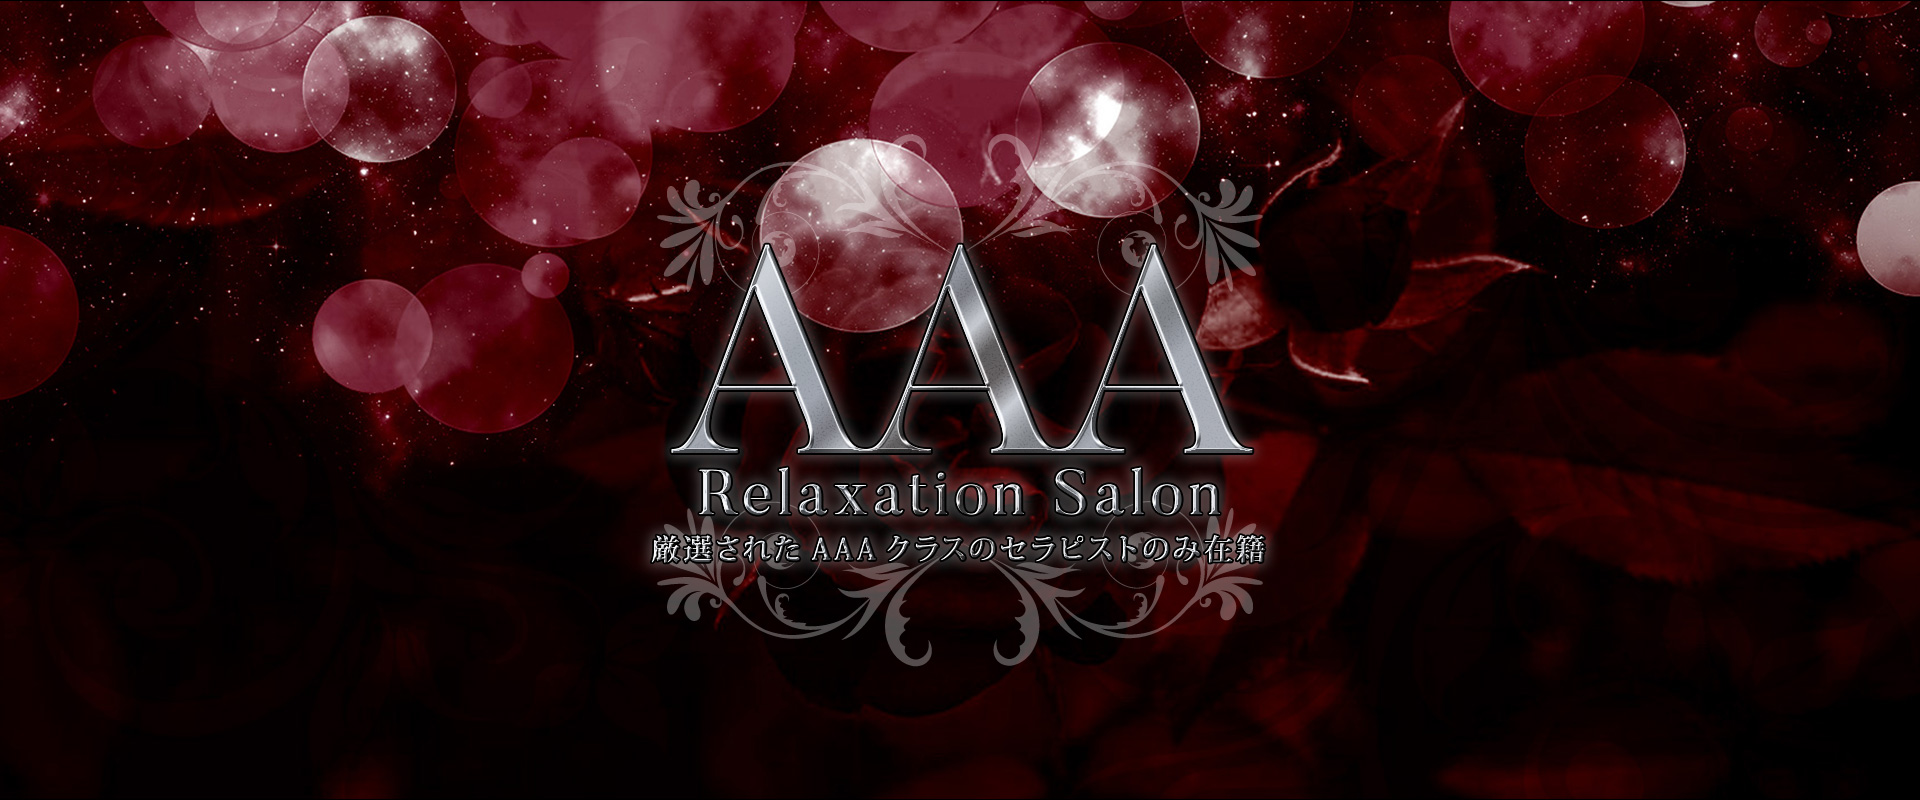 AAA Relaxation Salon